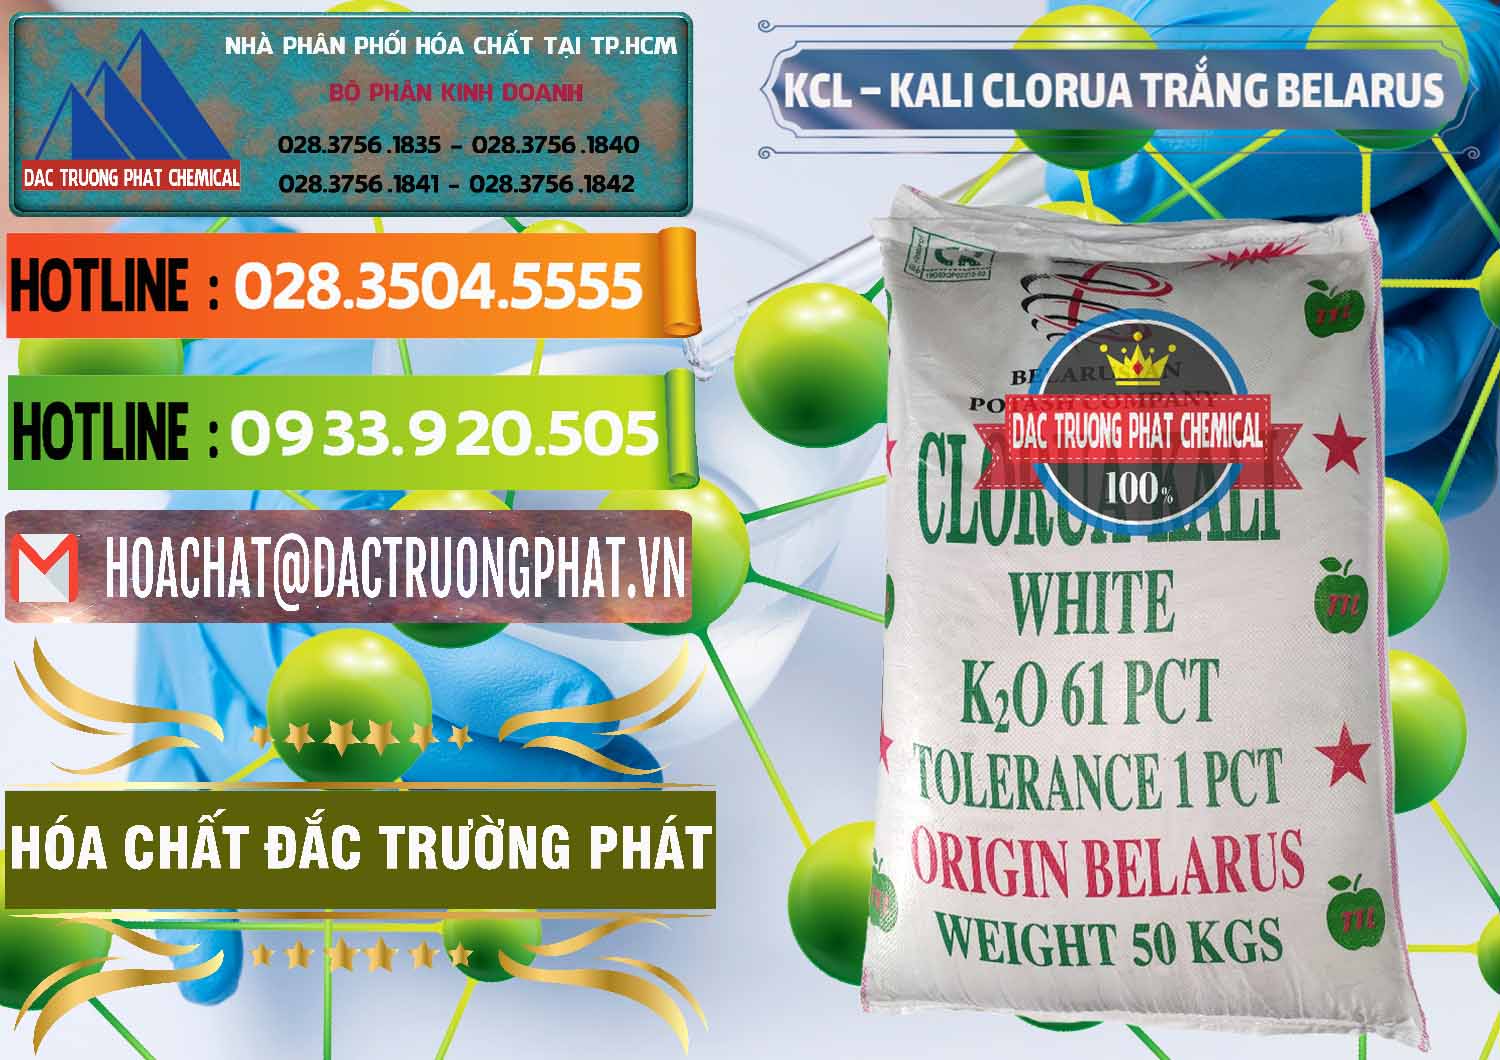 Cty bán - phân phối KCL – Kali Clorua Trắng Belarus - 0085 - Công ty chuyên bán ( cung cấp ) hóa chất tại TP.HCM - cungcaphoachat.com.vn